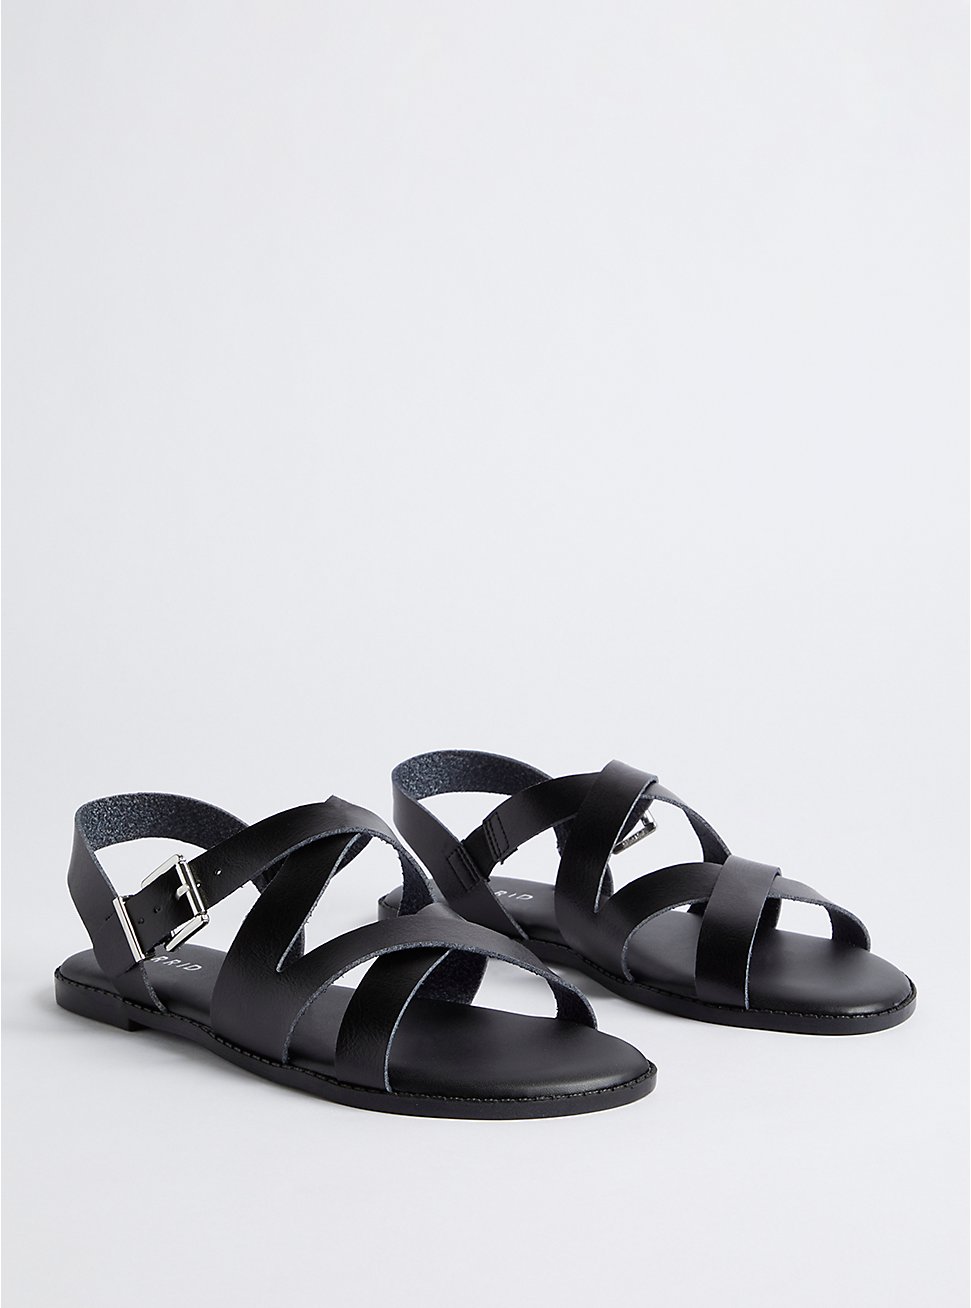 Plus Size Criss Cross Sandal - Faux Leather Black, BLACK, hi-res